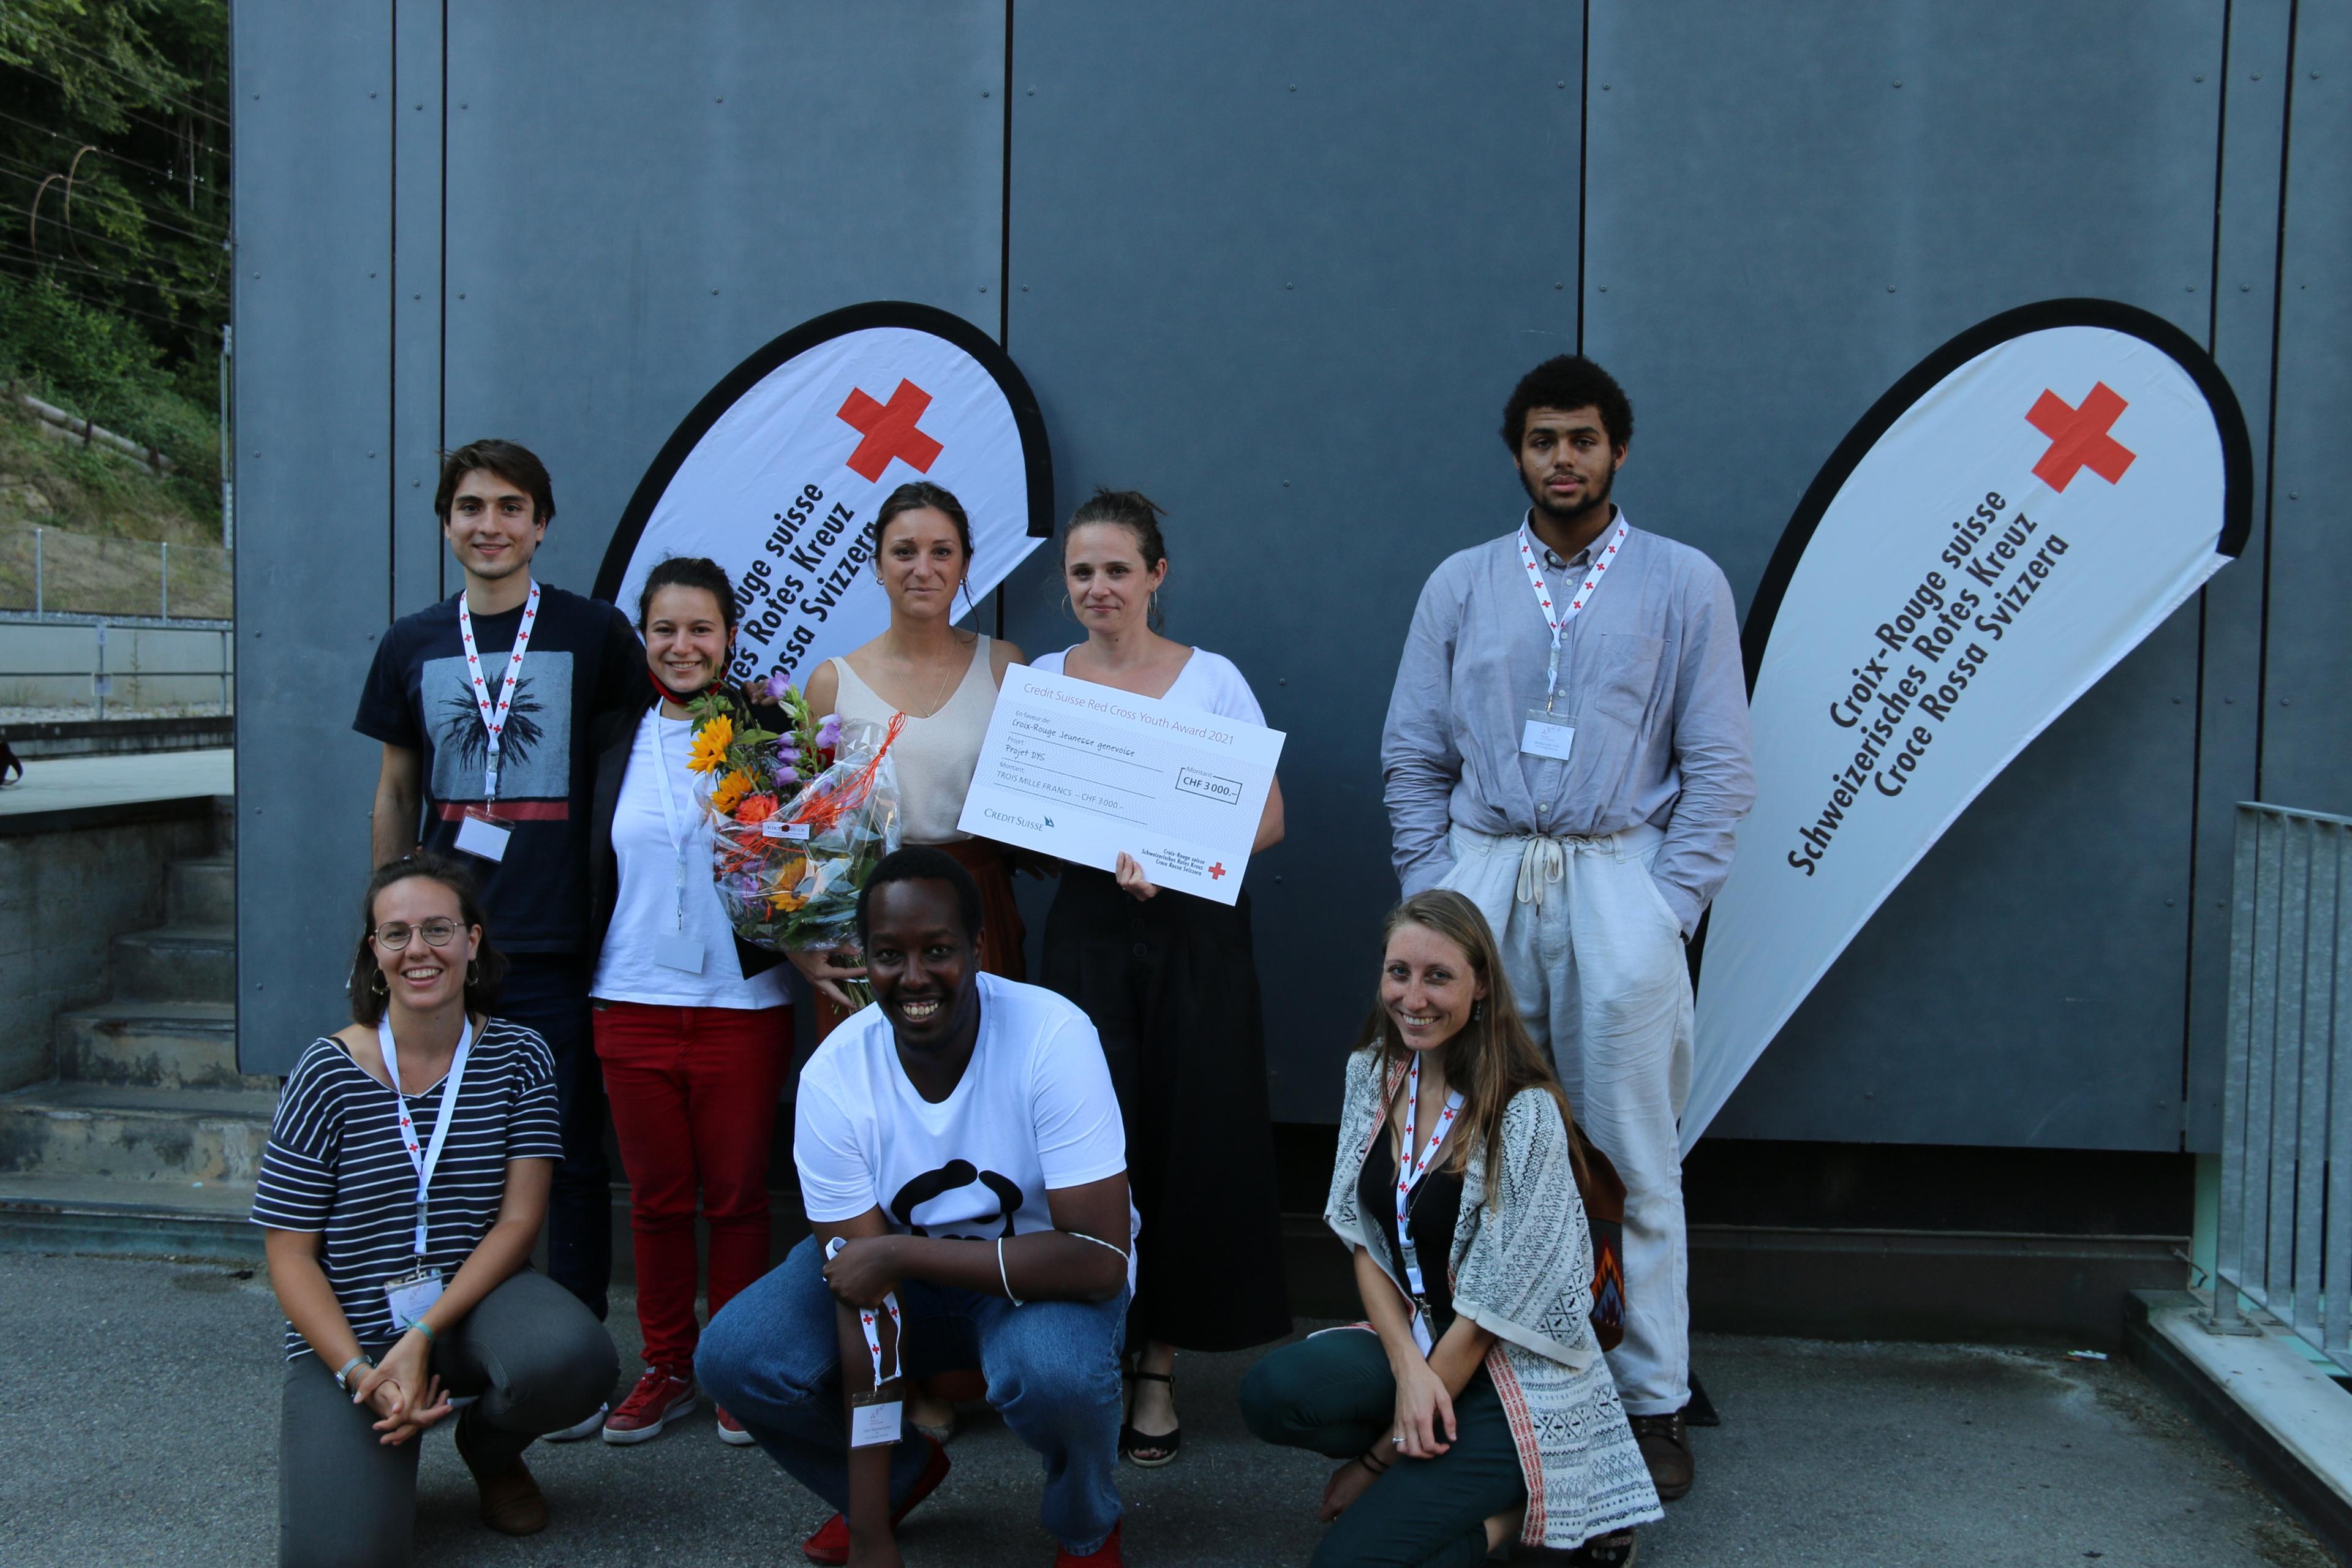 Des membres de la Croix-Rouge Jeunesse du canton de Genève montrent le chèque qu'ils ont reçu en tant que lauréats du Prix Croix-Rouge Jeunesse du Credit Suisse 2021.